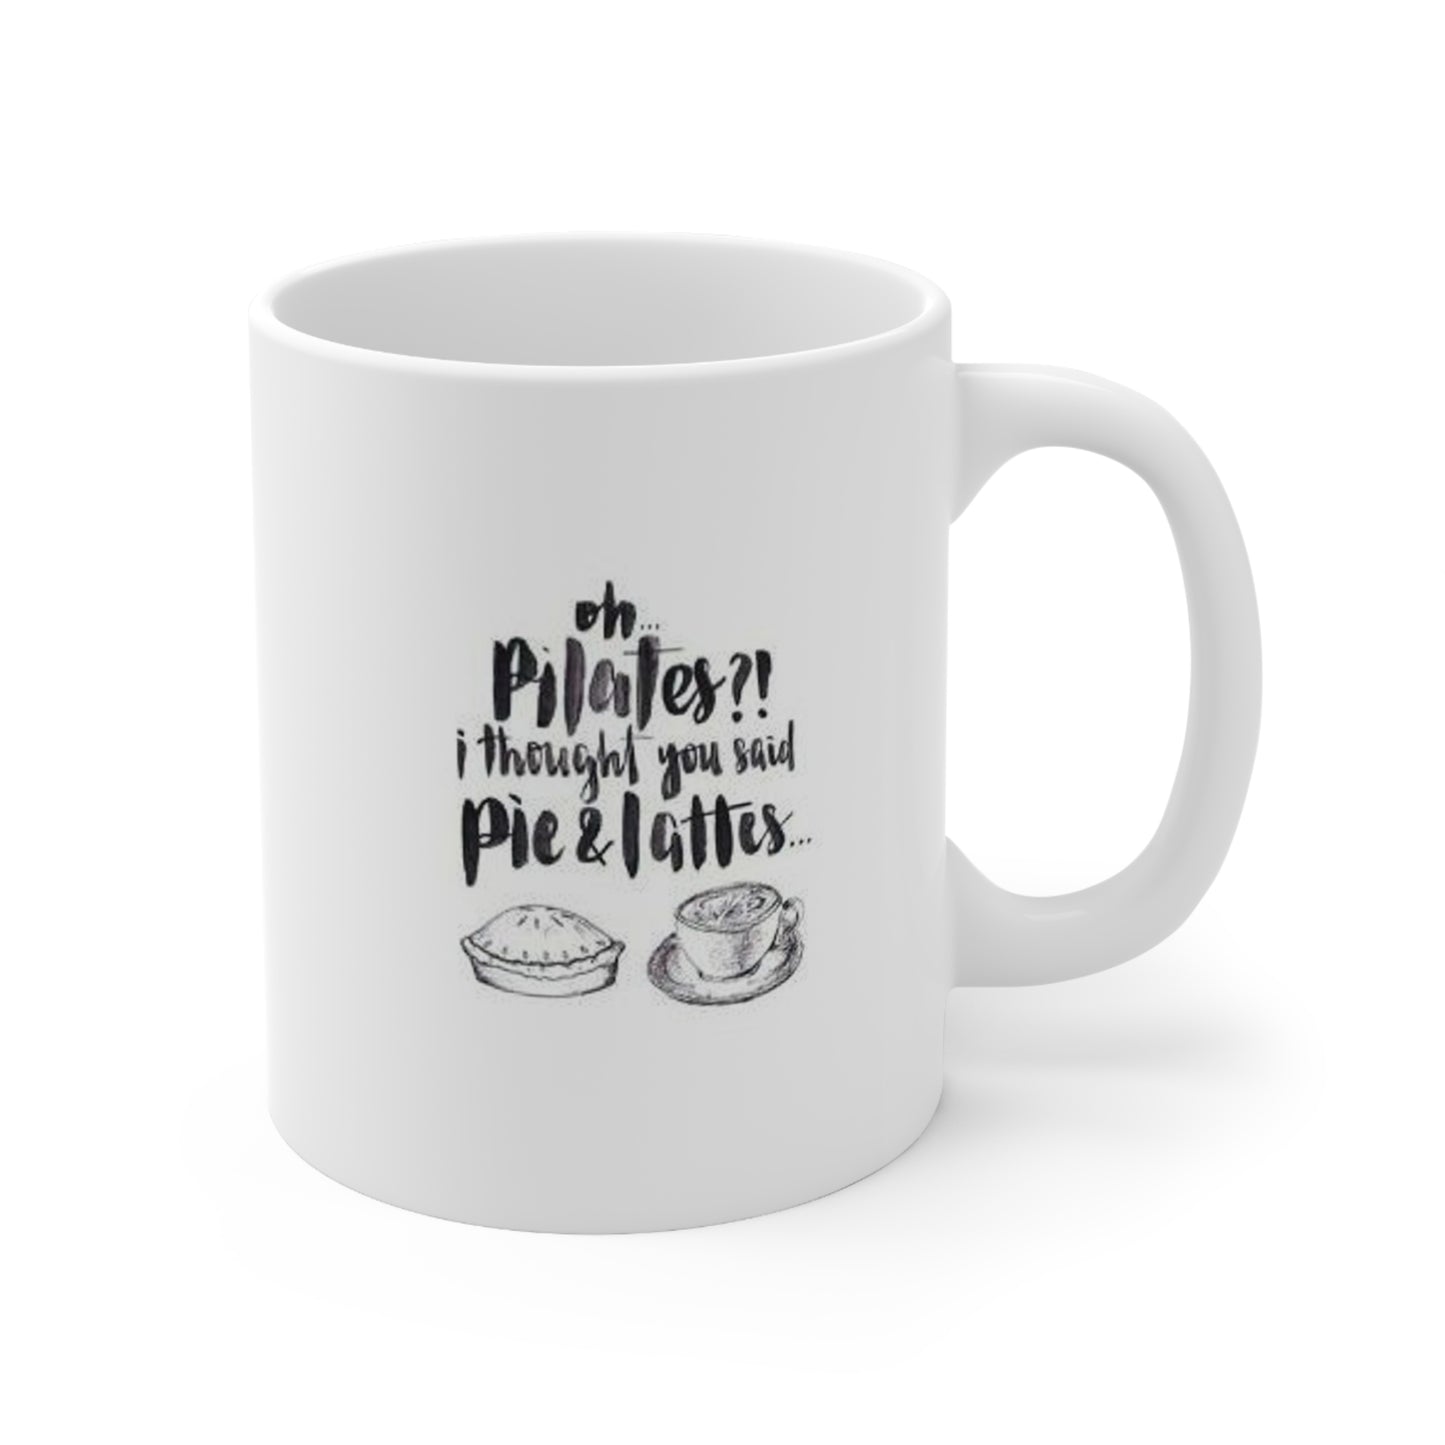 Pie & Lattes or Pilates? Humor: Ceramic Mug 11oz